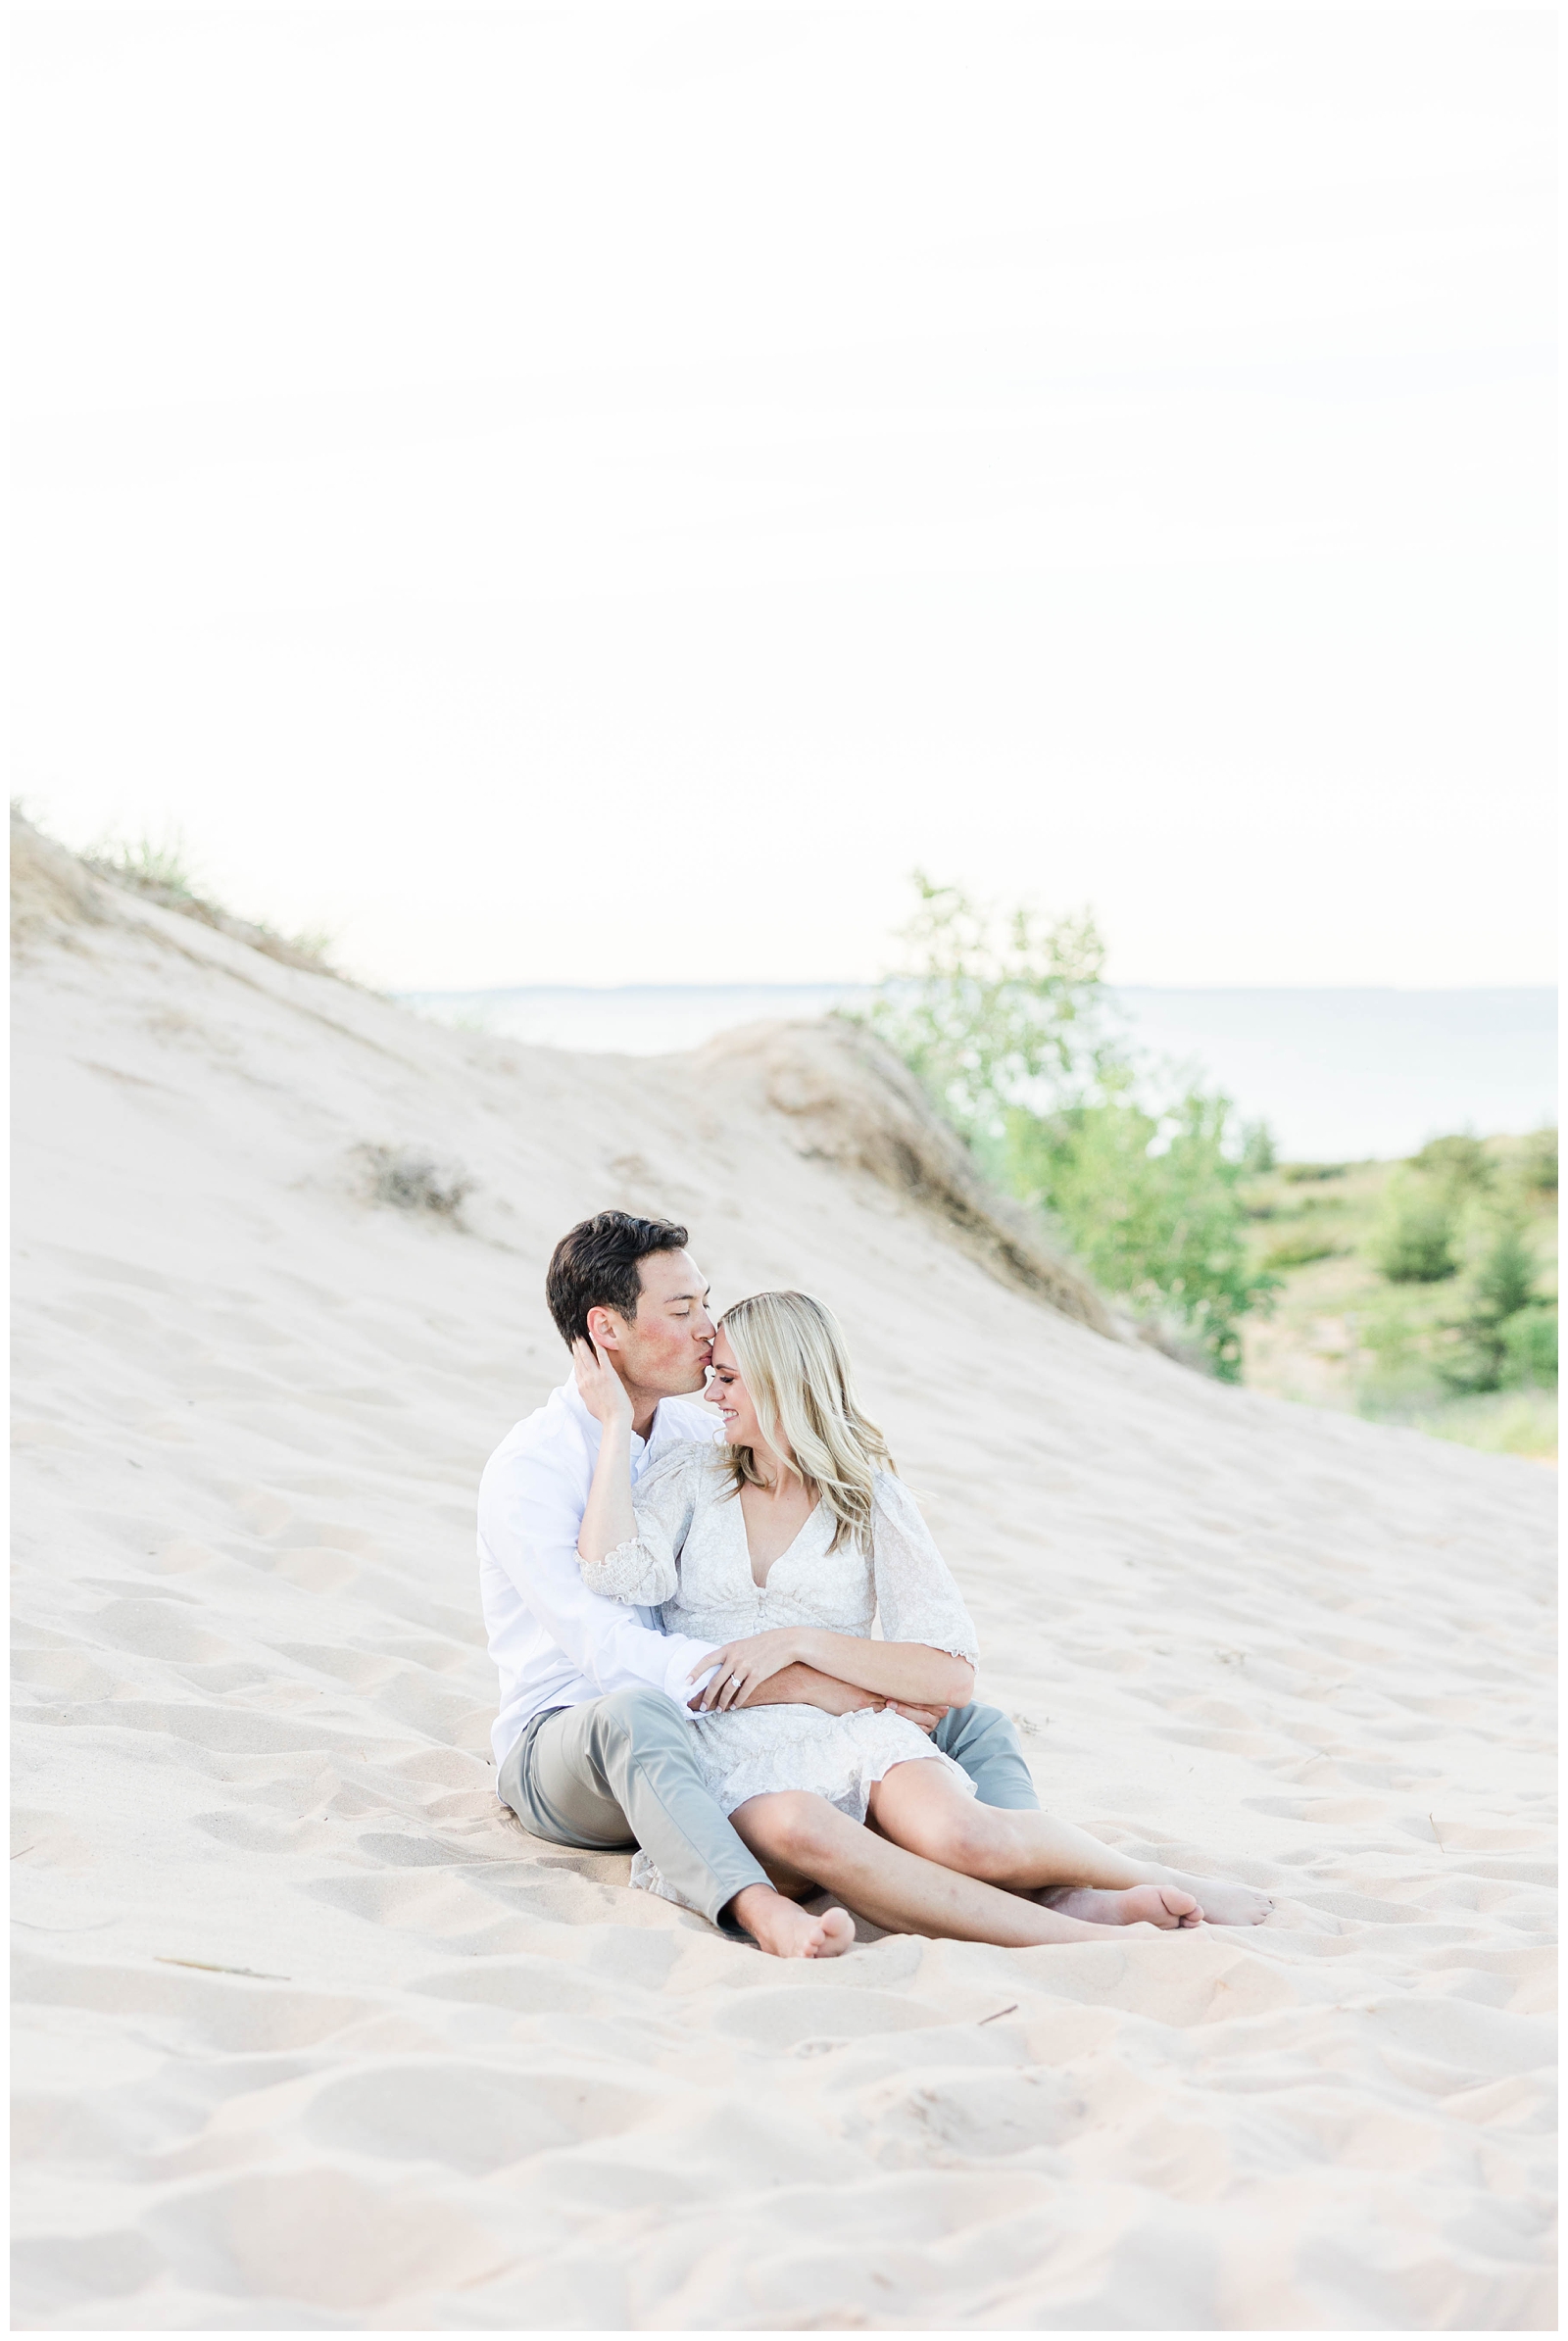 Engagement photos at Sleeping Bear Dunes